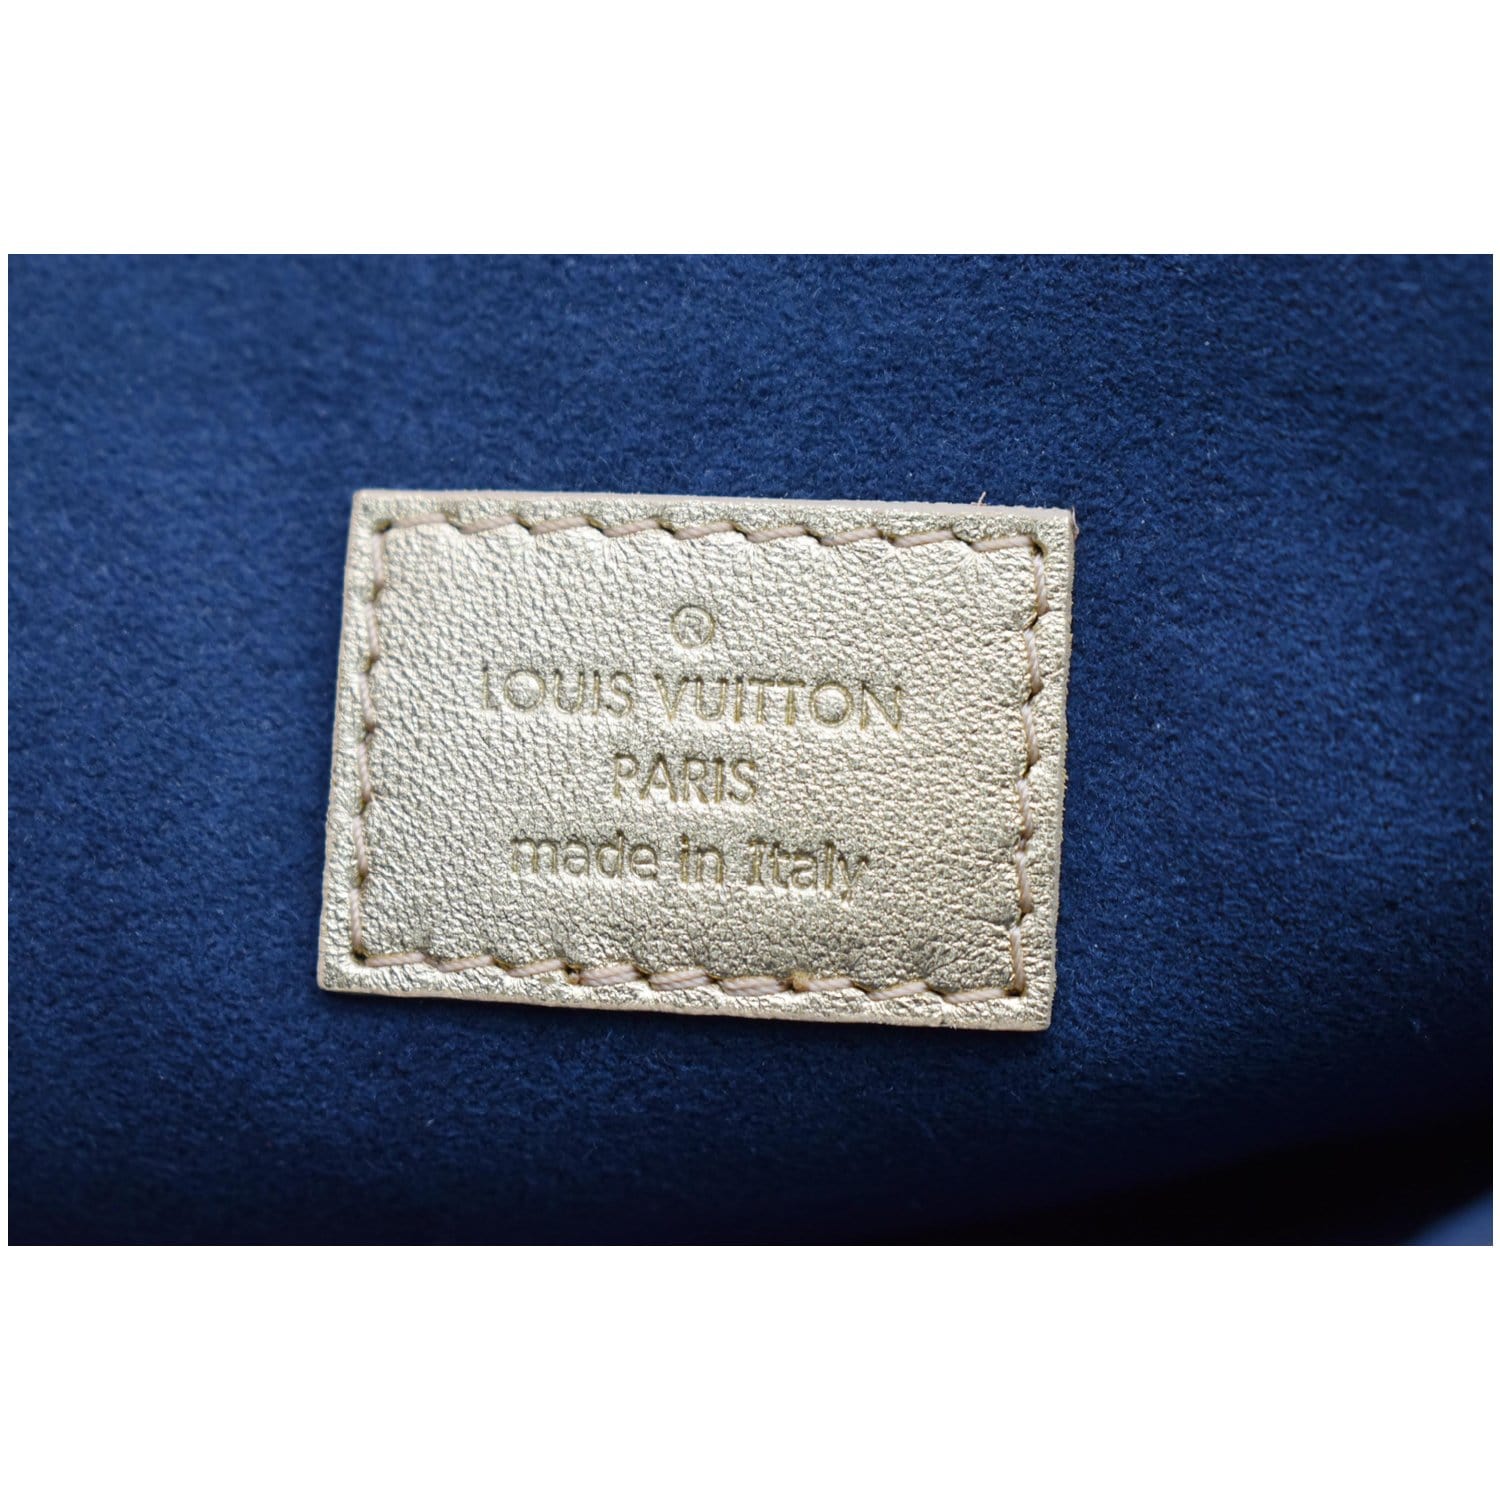 M21209 Louis Vuitton Monogram Motif Coussin PM Handbag